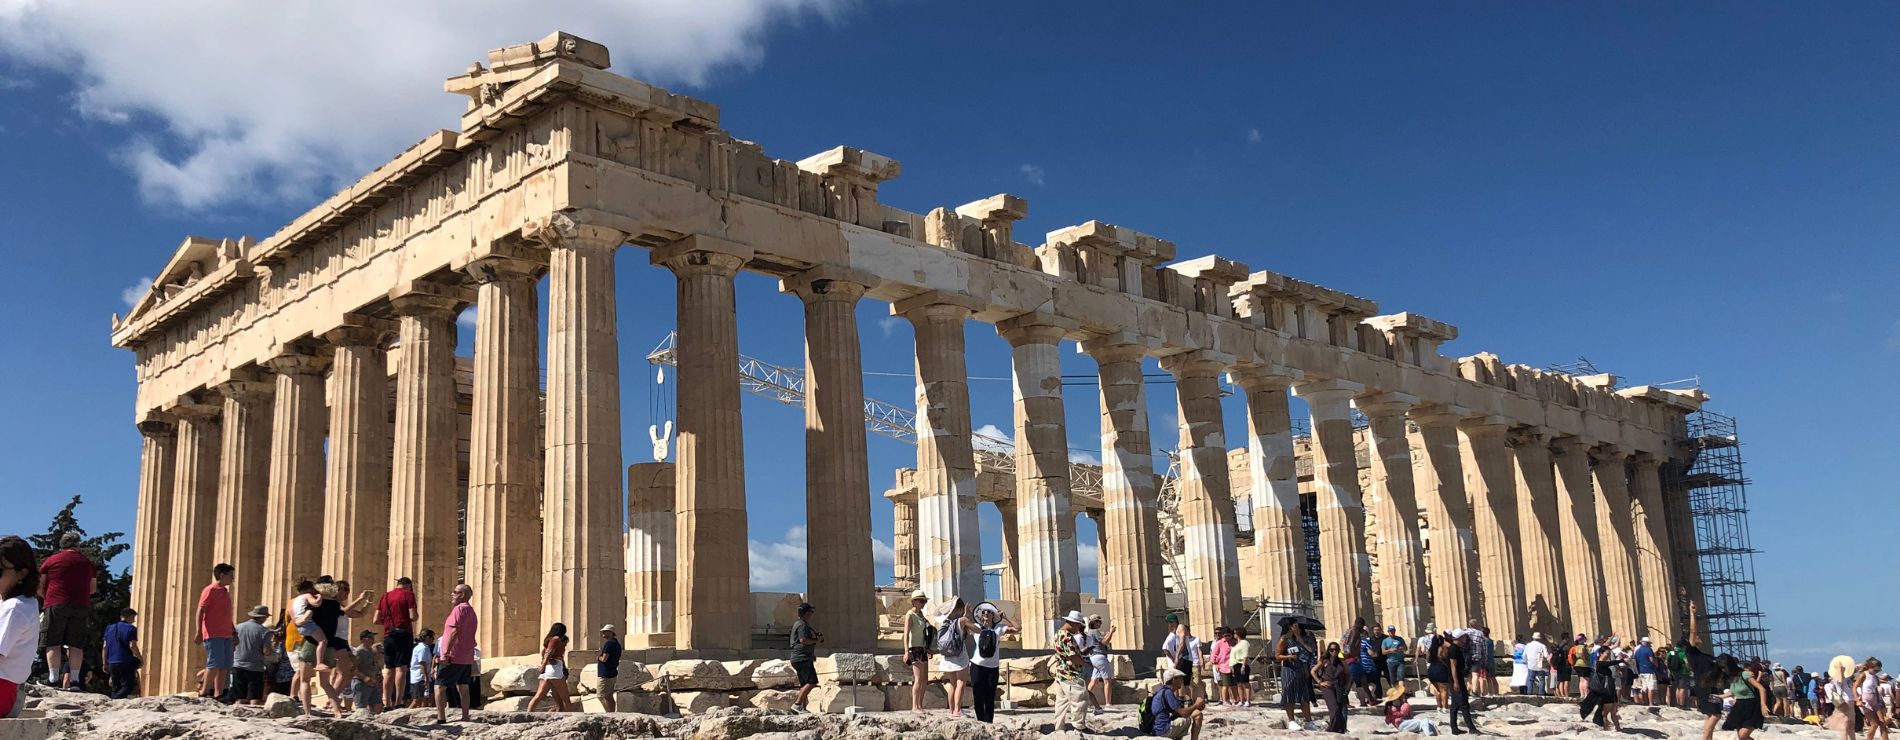 Ruínas do Parthenon. A arquitetura clássica foi um dos legados deixados pela Idade Antiga